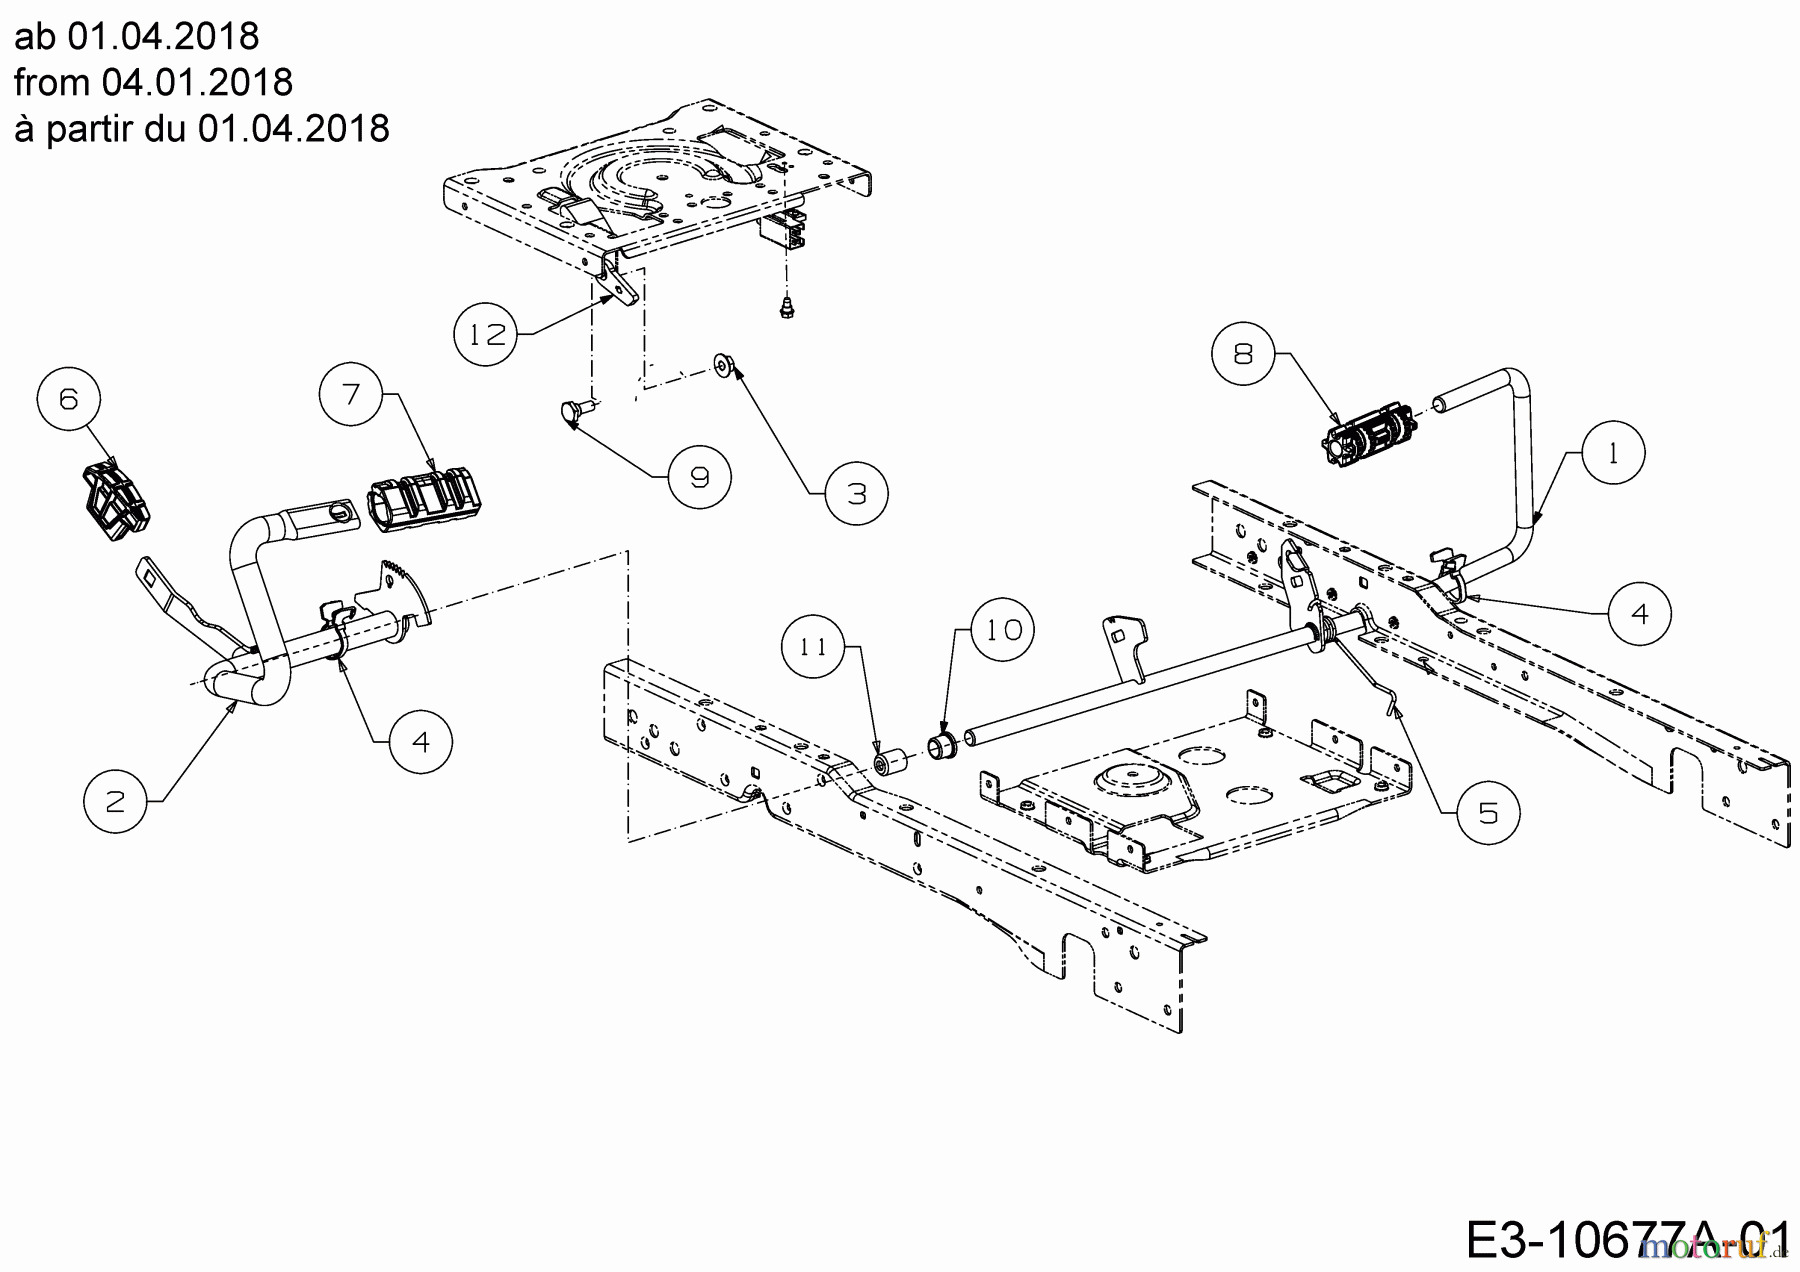  Cub Cadet Garden tractors XT3 QS127 14AIA5CQ603  (2018) Pedals from 04.01.2018